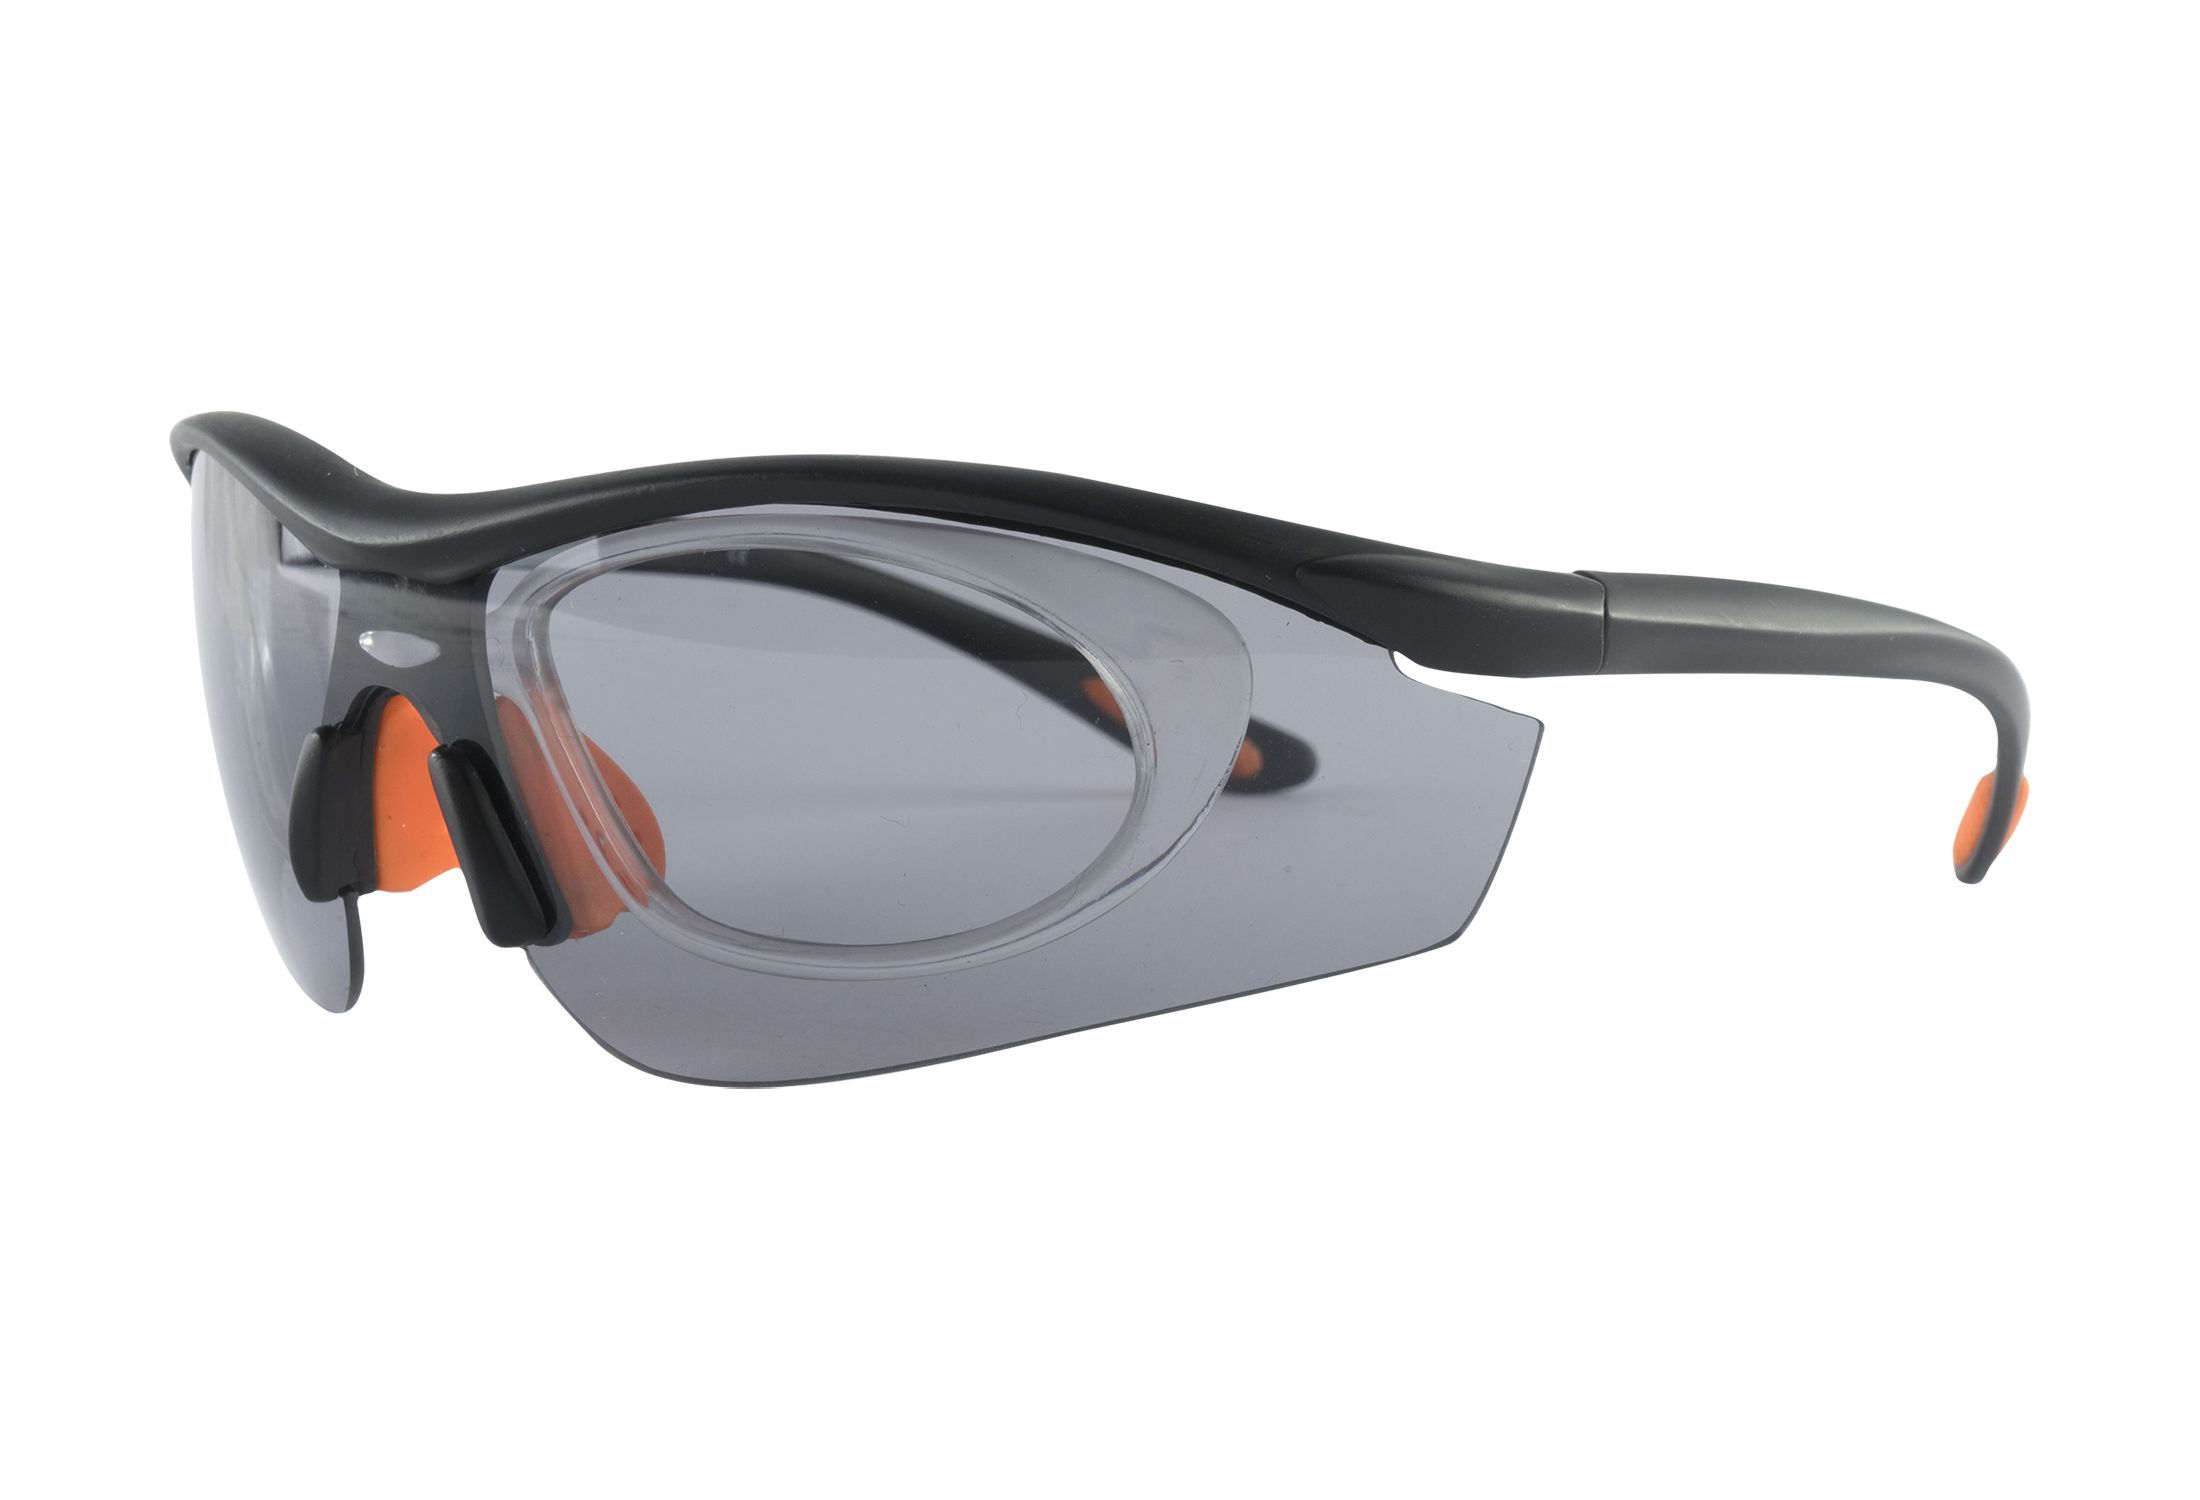 Sportsbriller med styrke fra eo Active - Giselle - Svart